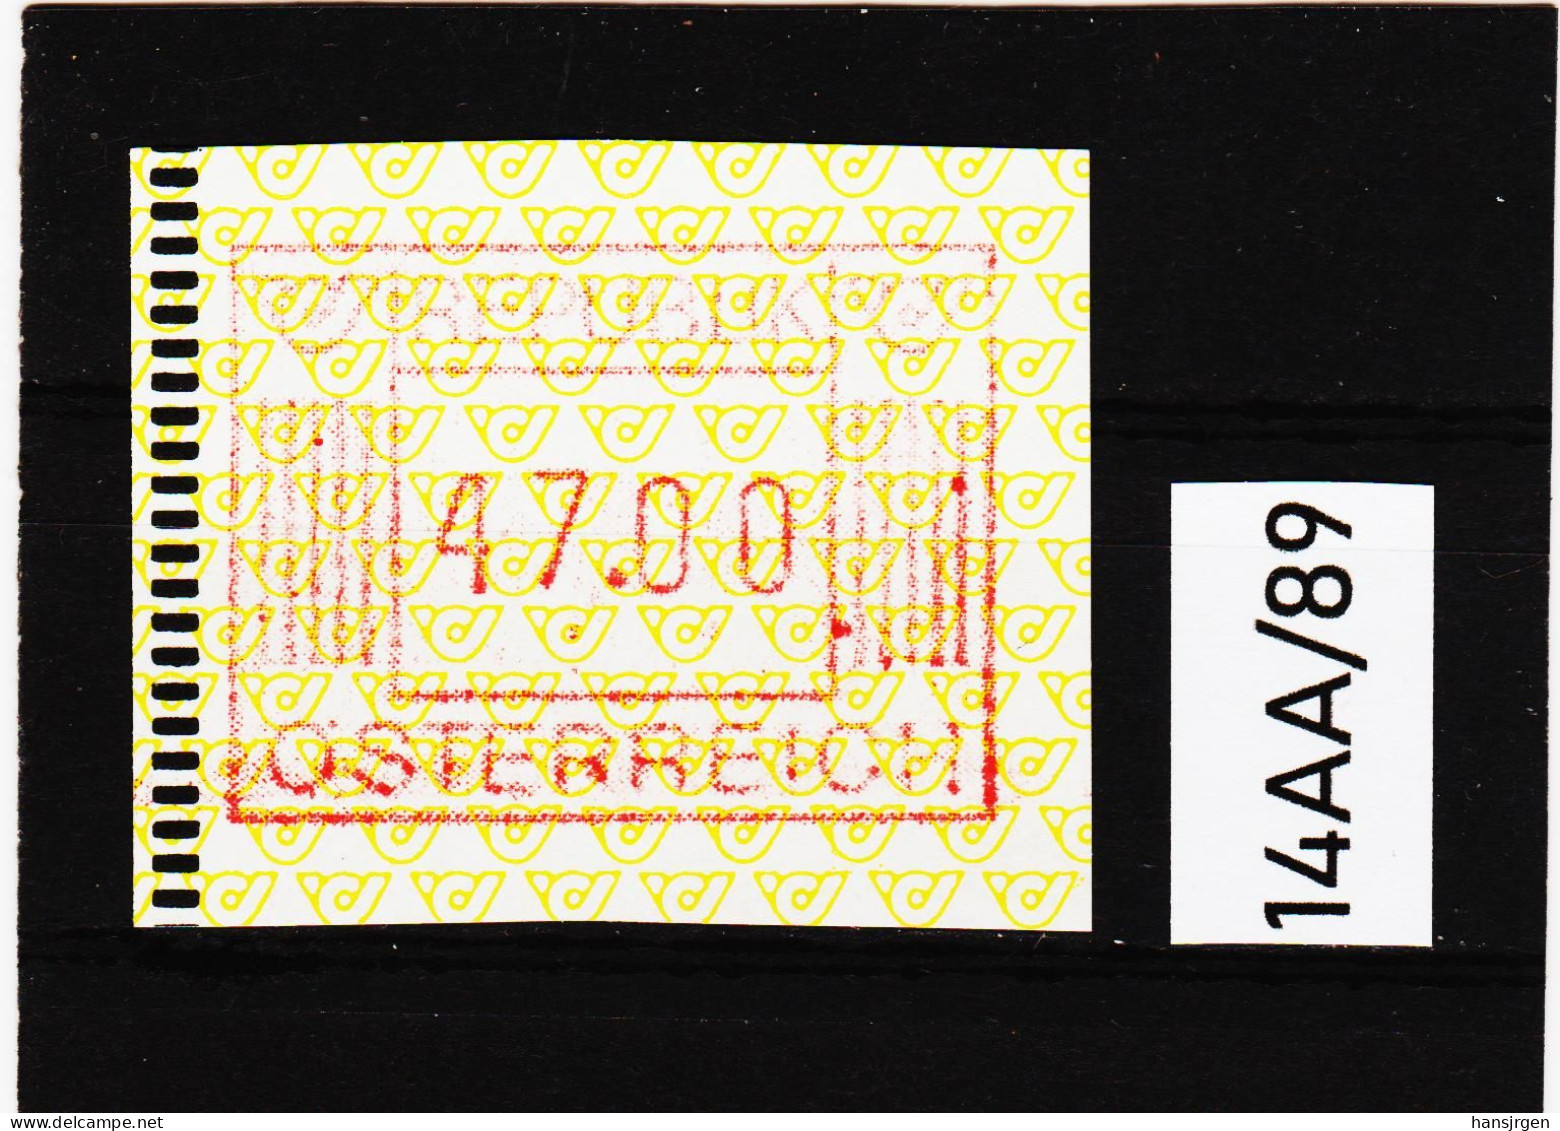 14AA/89  ÖSTERREICH 1983 AUTOMATENMARKEN 1. AUSGABE  47,00 SCHILLING   ** Postfrisch - Machine Labels [ATM]